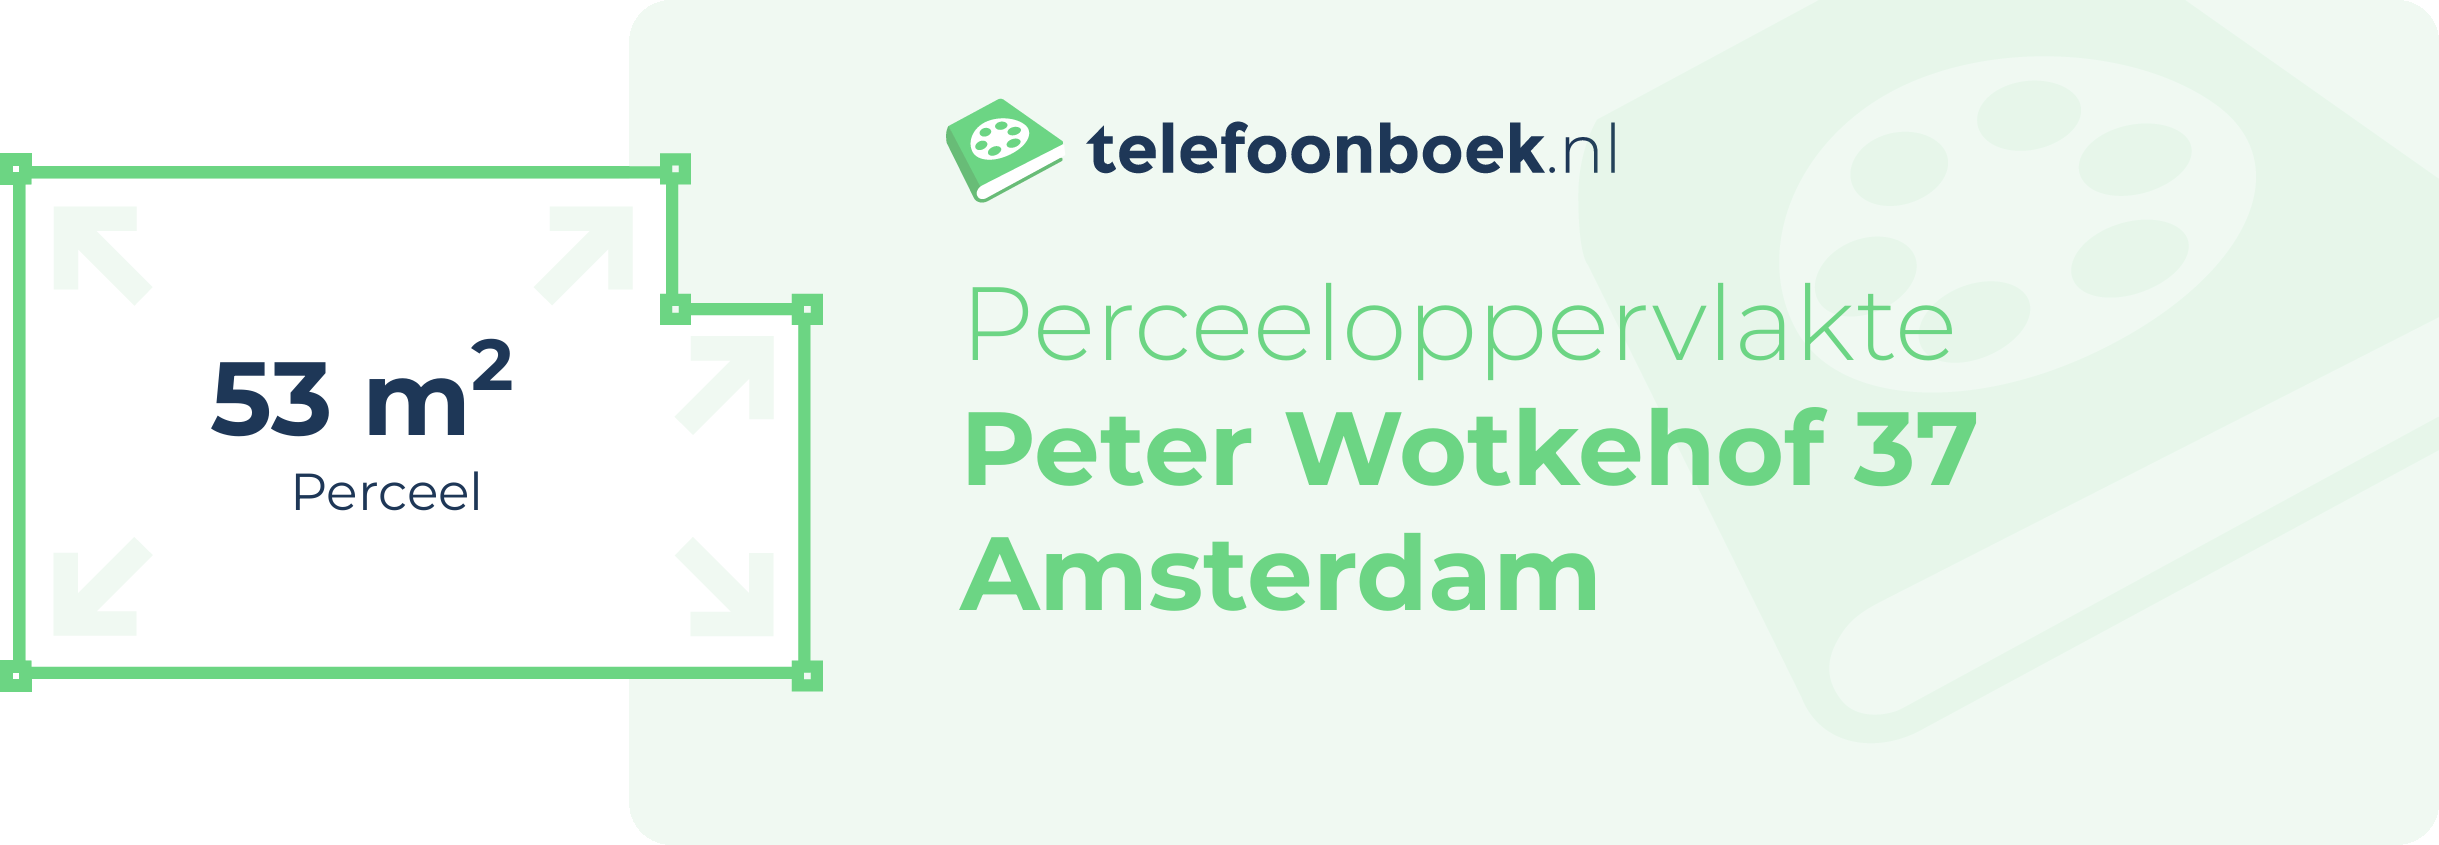 Perceeloppervlakte Peter Wotkehof 37 Amsterdam